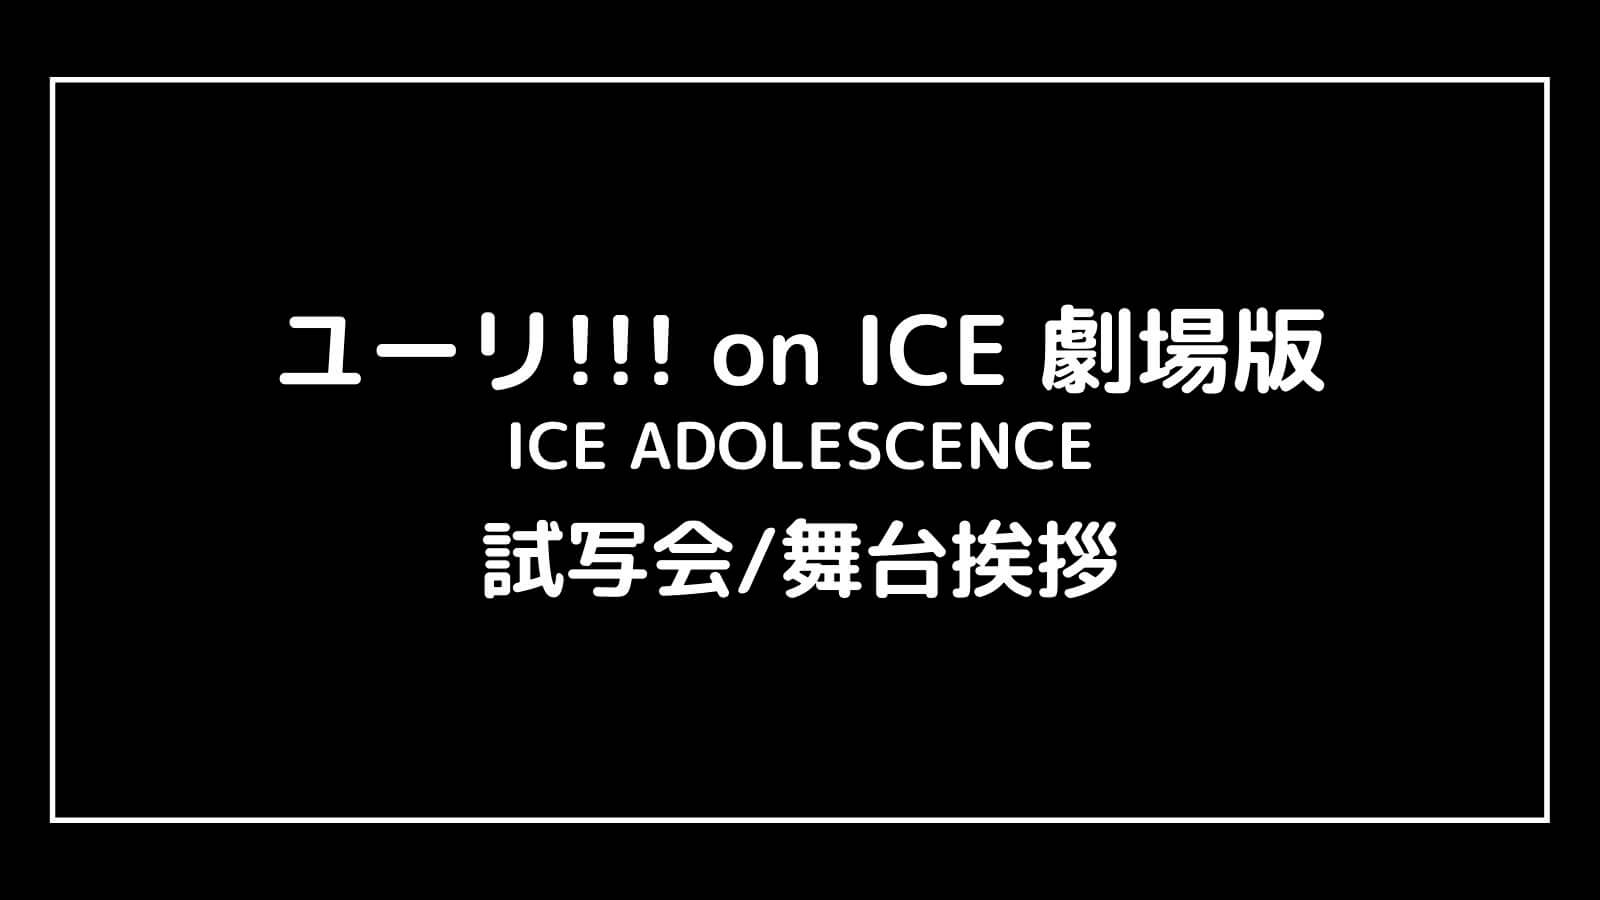 映画『ユーリ!!! on ICE 劇場版』の試写会と舞台挨拶ライブビューイング情報